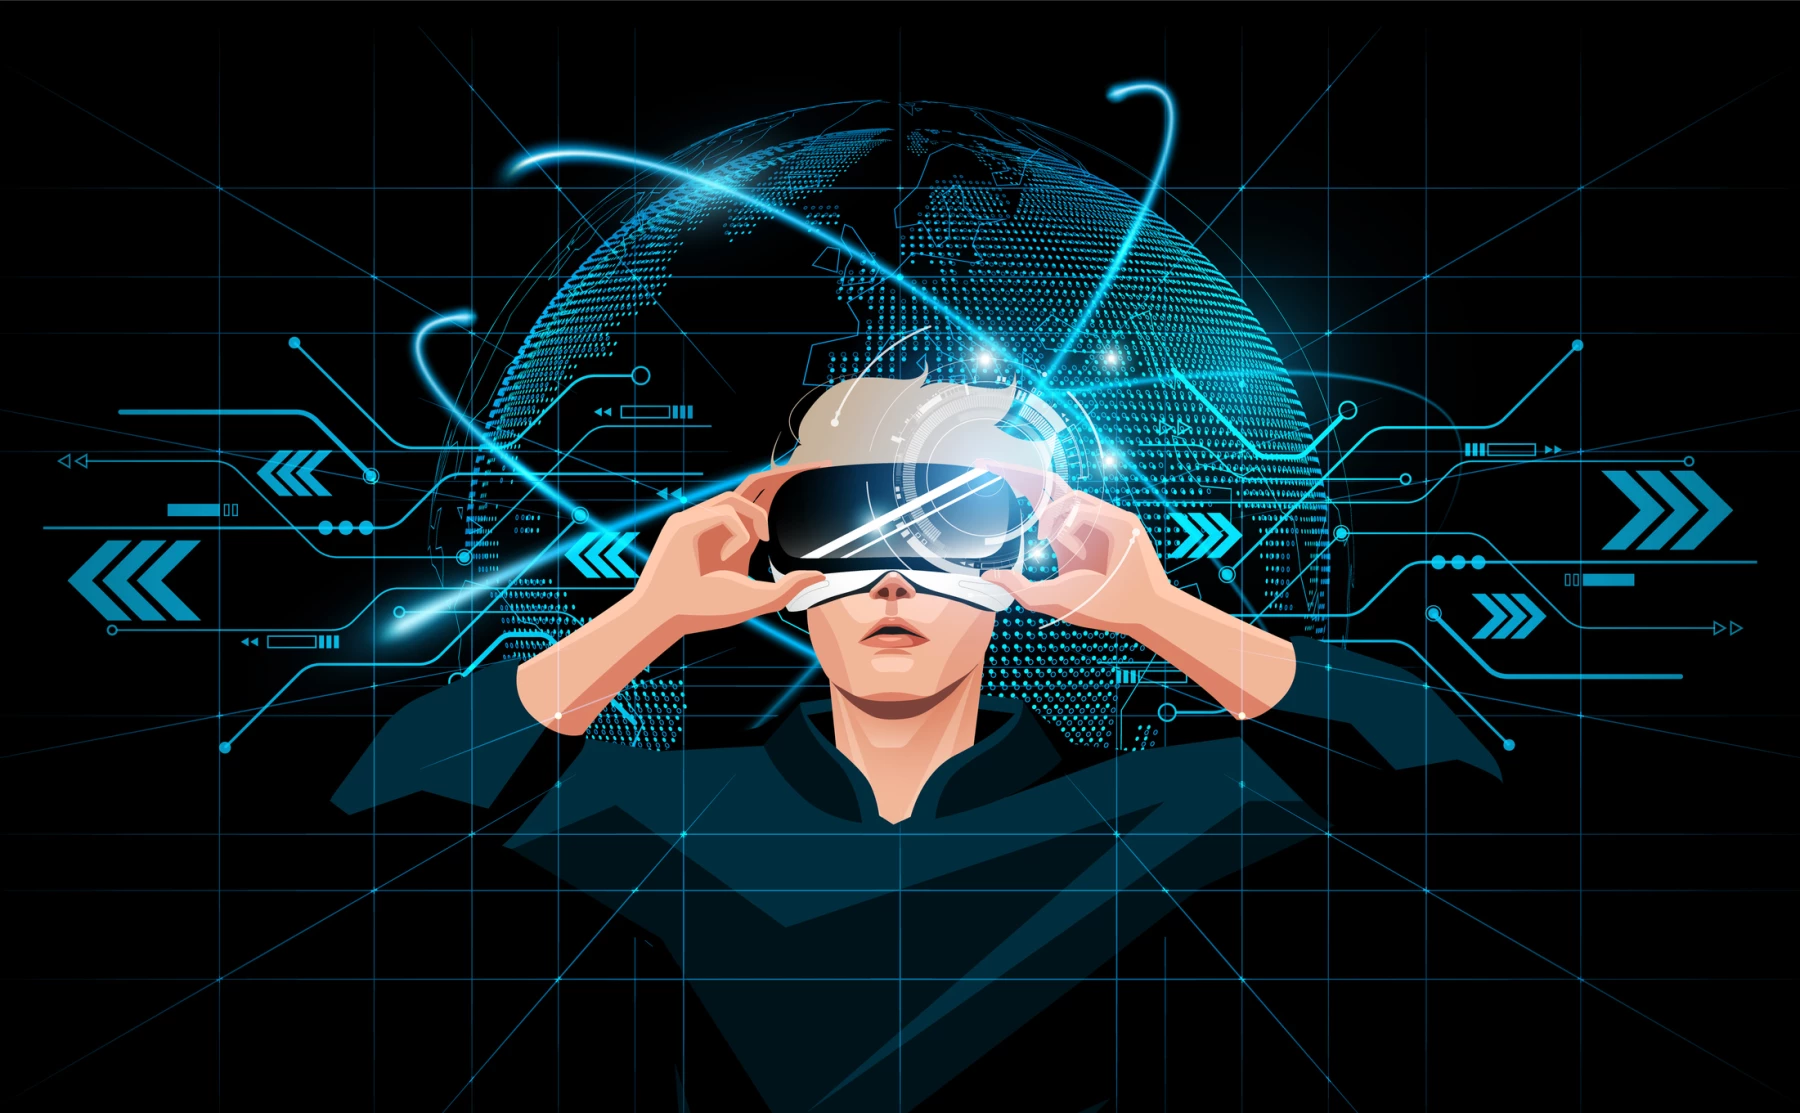 Deja a los niños vivir otros mundos con lentes de realidad virtual